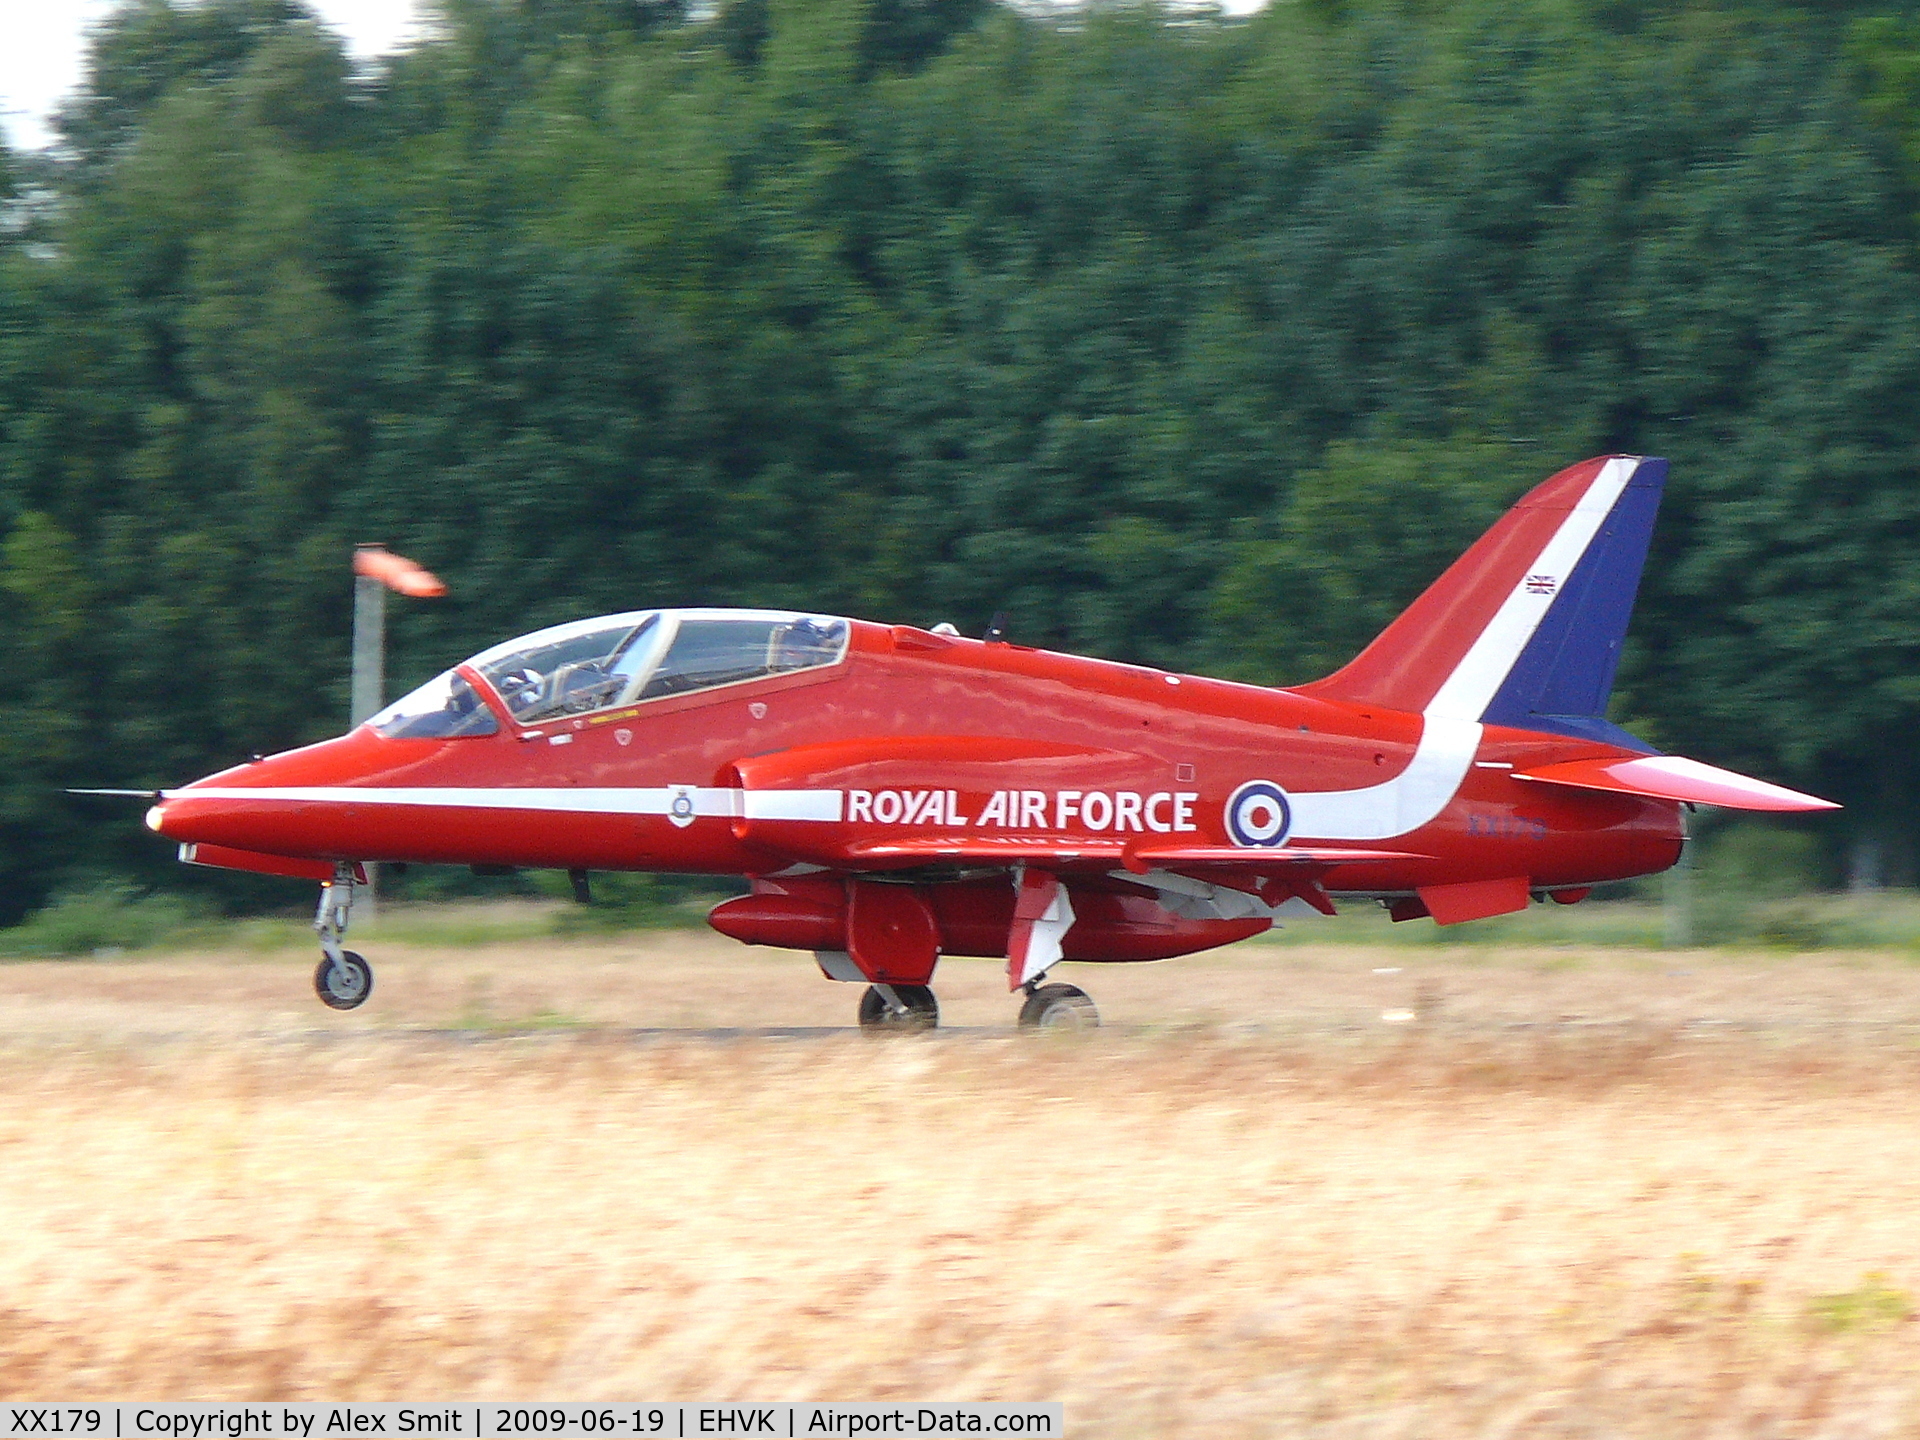 XX179, 1977 Hawker Siddeley Hawk T.1W C/N 026/312026, British Aerospace Hawk T1W XX179 Royal Air Force Red Arrows